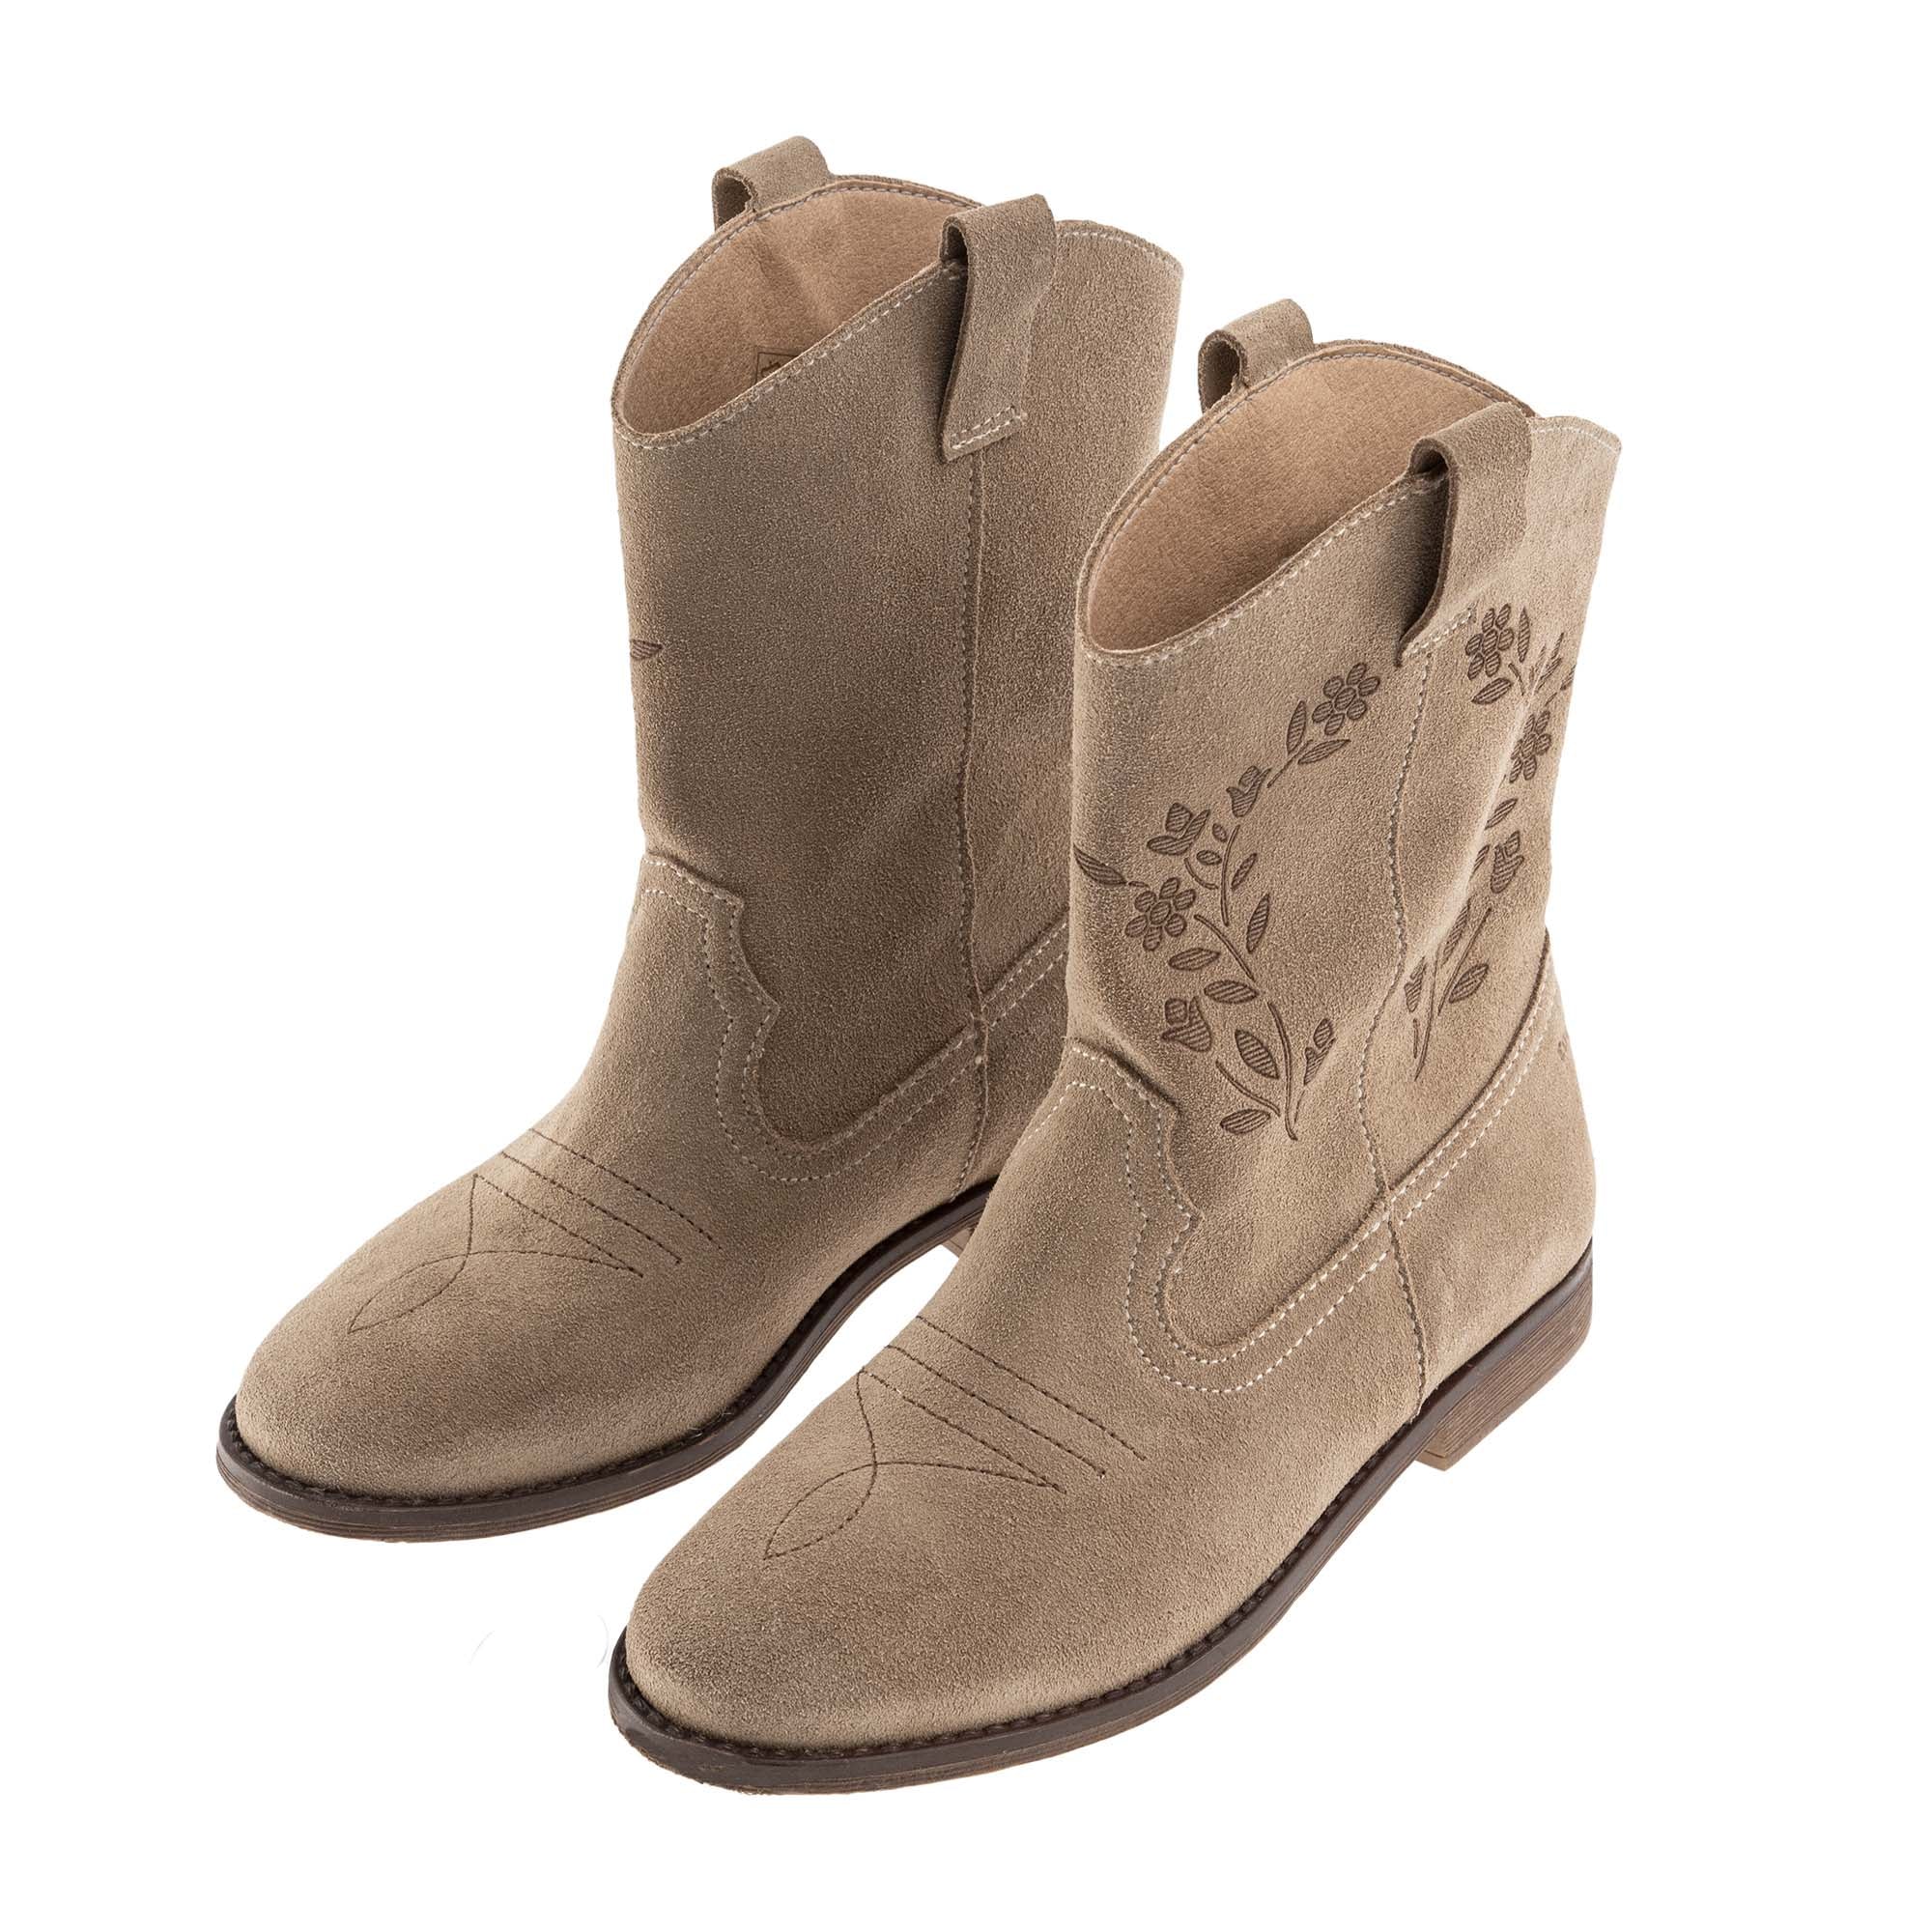 Tocoto Vintage Cowboy Boots - Brown